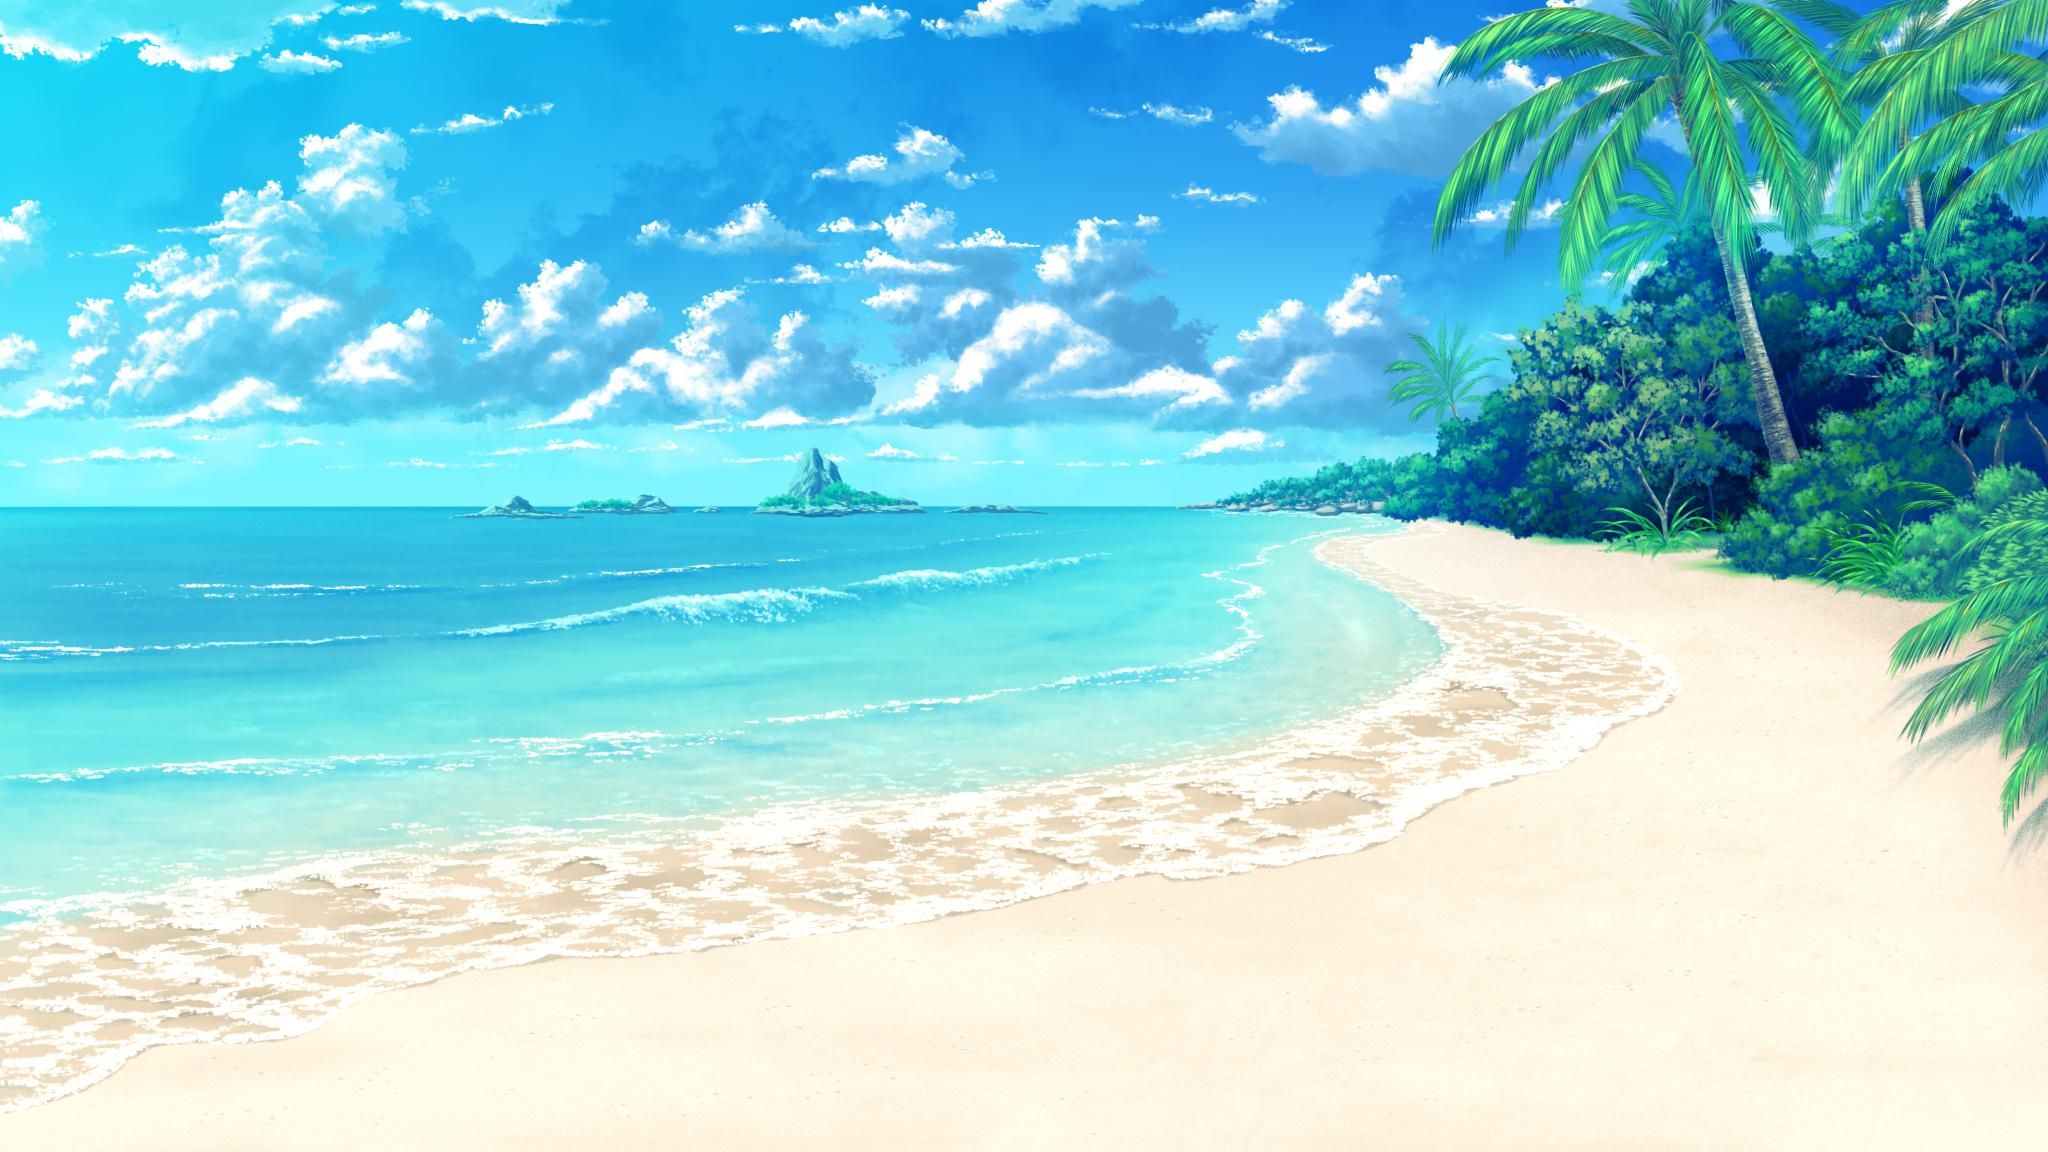 Hãy đắm mình trong những khung hình anime đầy màu sắc trên nền biển xanh ngắt tuyệt đẹp. Một không gian hài hòa giữa vẻ đẹp của anime và bãi biển sẽ làm bạn chìm đắm trong một thế giới đầy mê hoặc và được tái hiện đầy tinh tế.